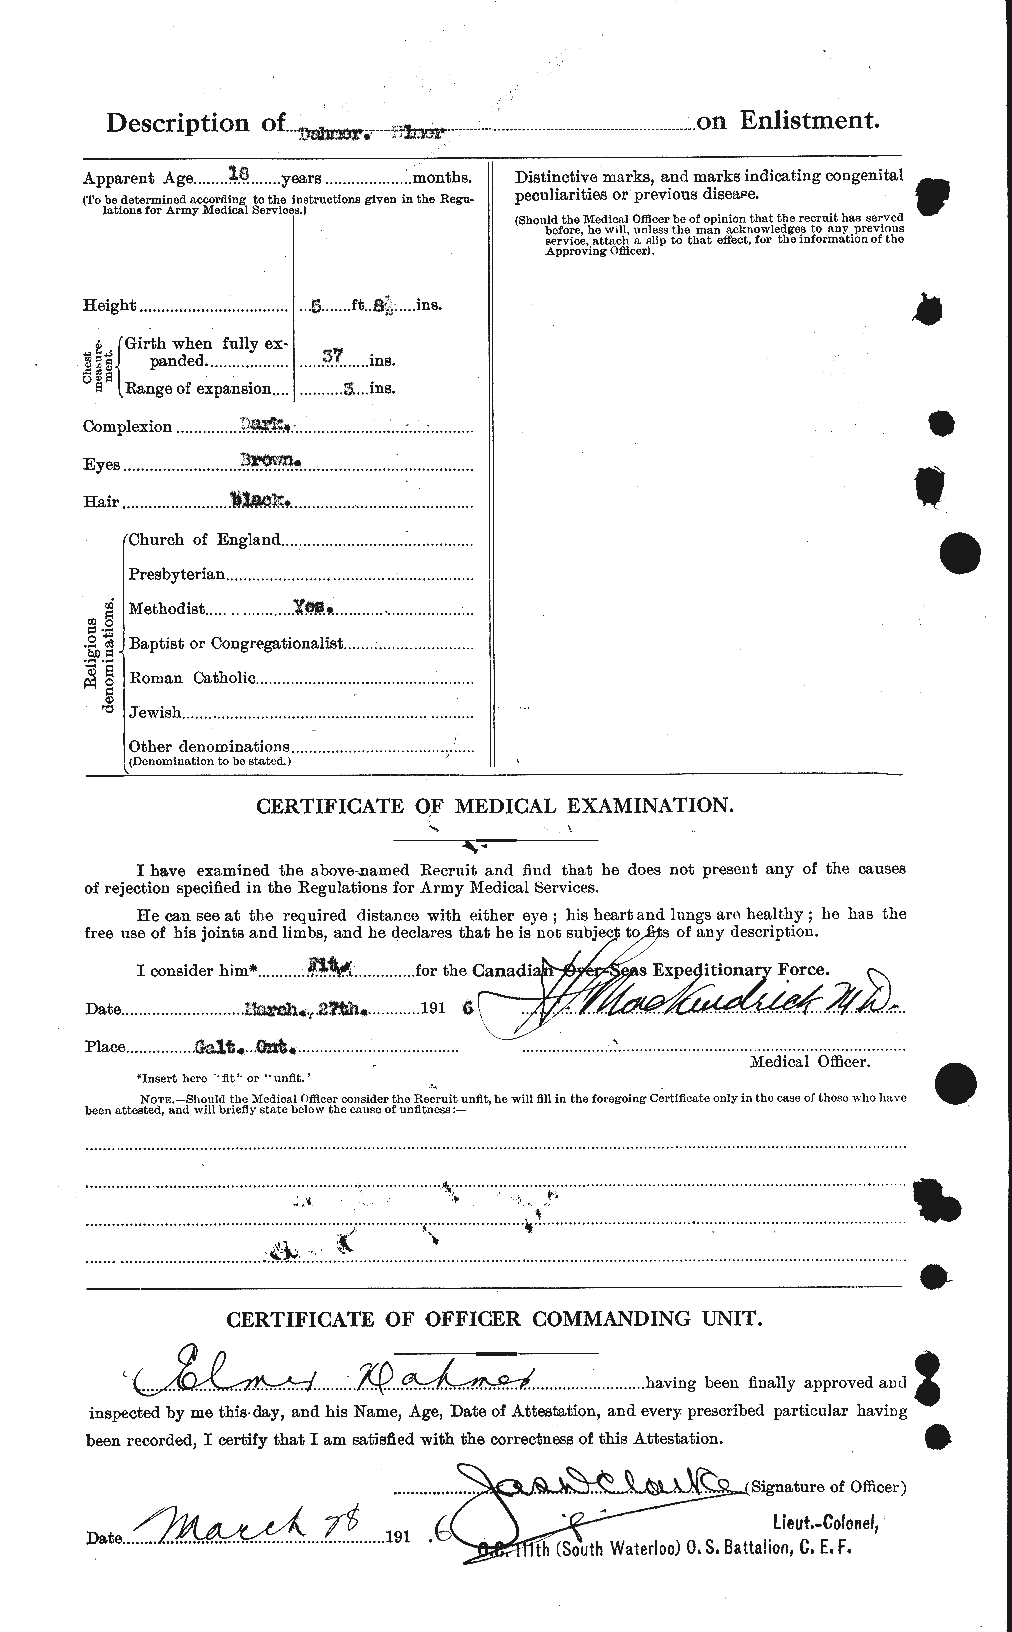 Dossiers du Personnel de la Première Guerre mondiale - CEC 280821b